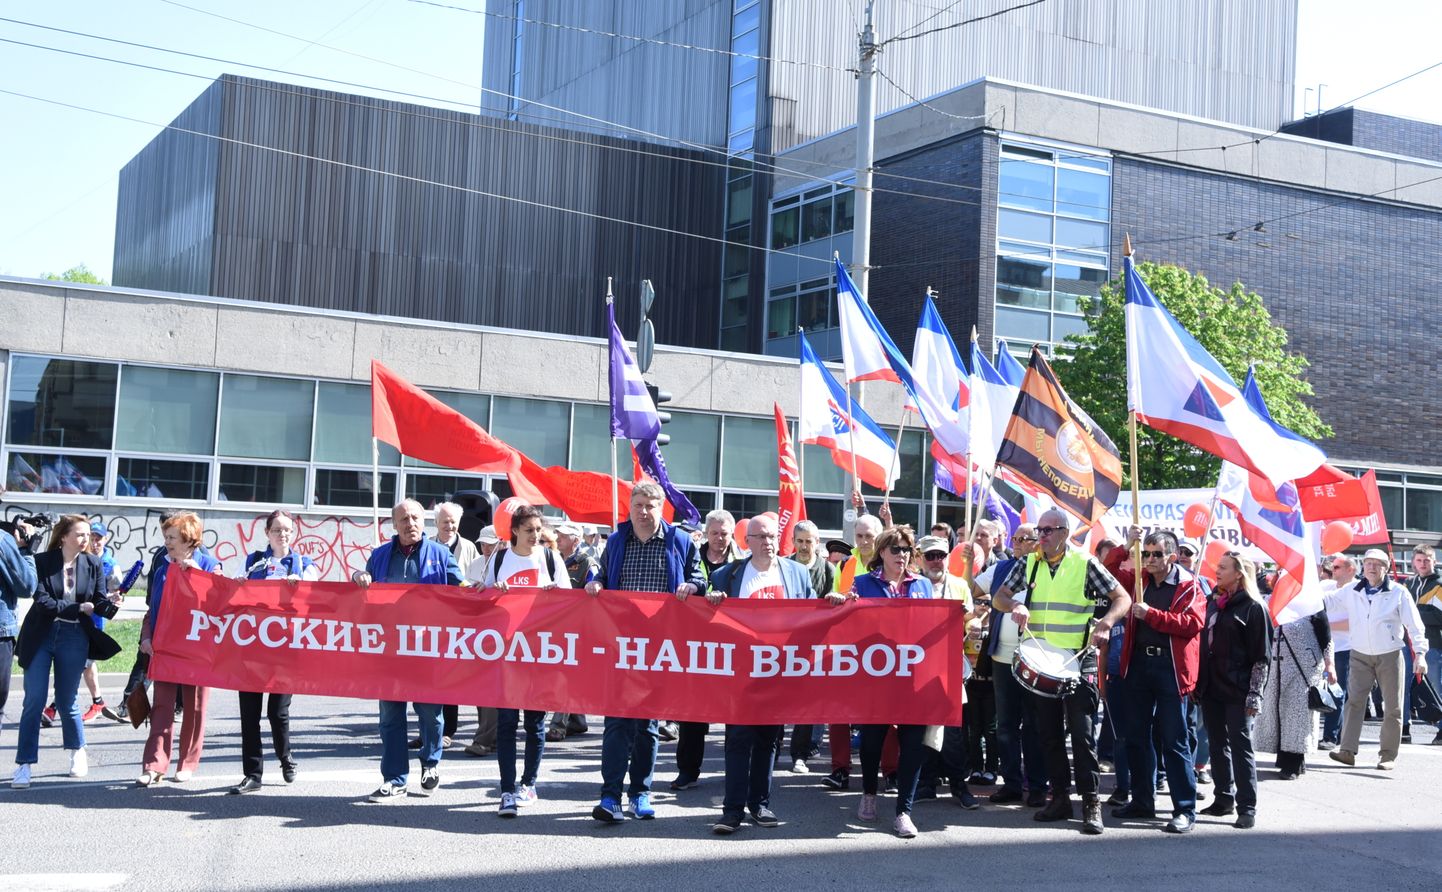 Latvijas Krievu savienība organizē protesta pasākumu, lai prasītu Latvijā nodrošināt sociālo taisnīgumu un krievu skolu pastāvēšanu Latvijā.